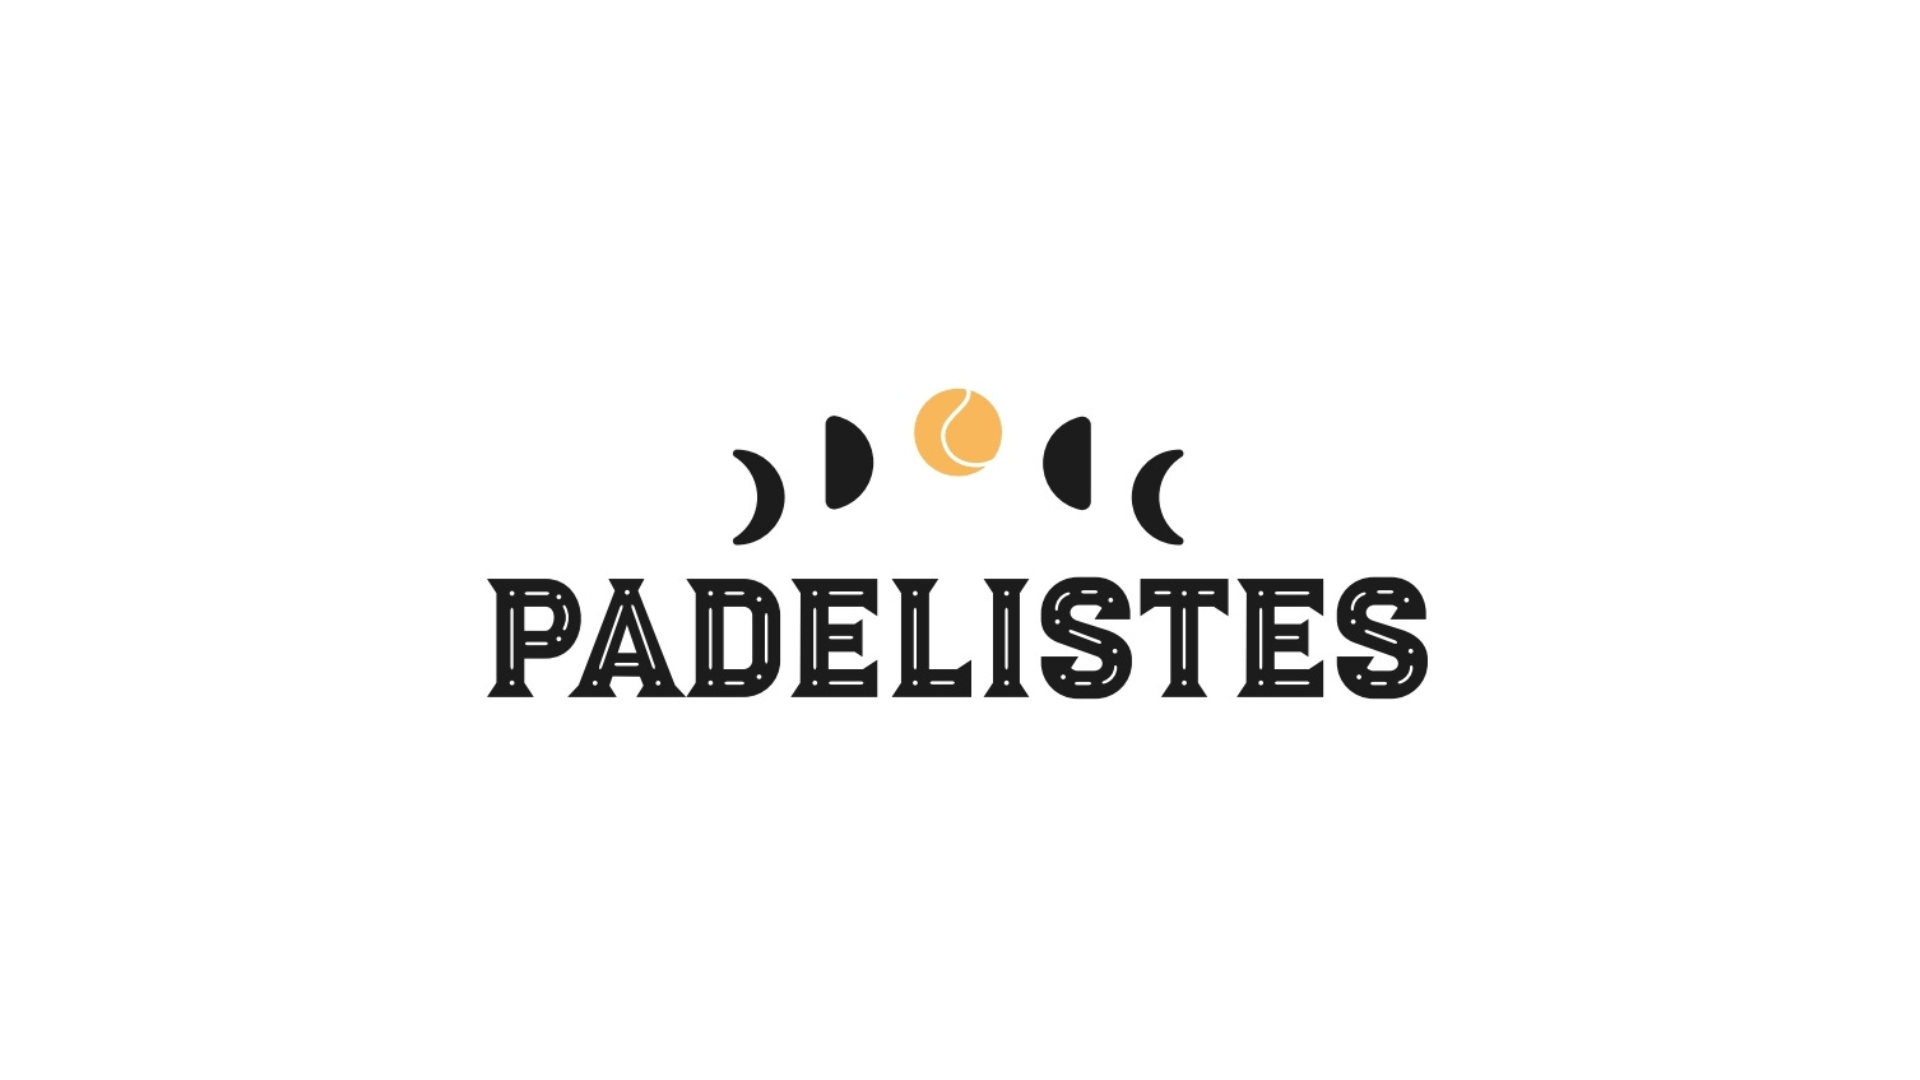 Padelists: en ny parisisk klubb på väg!